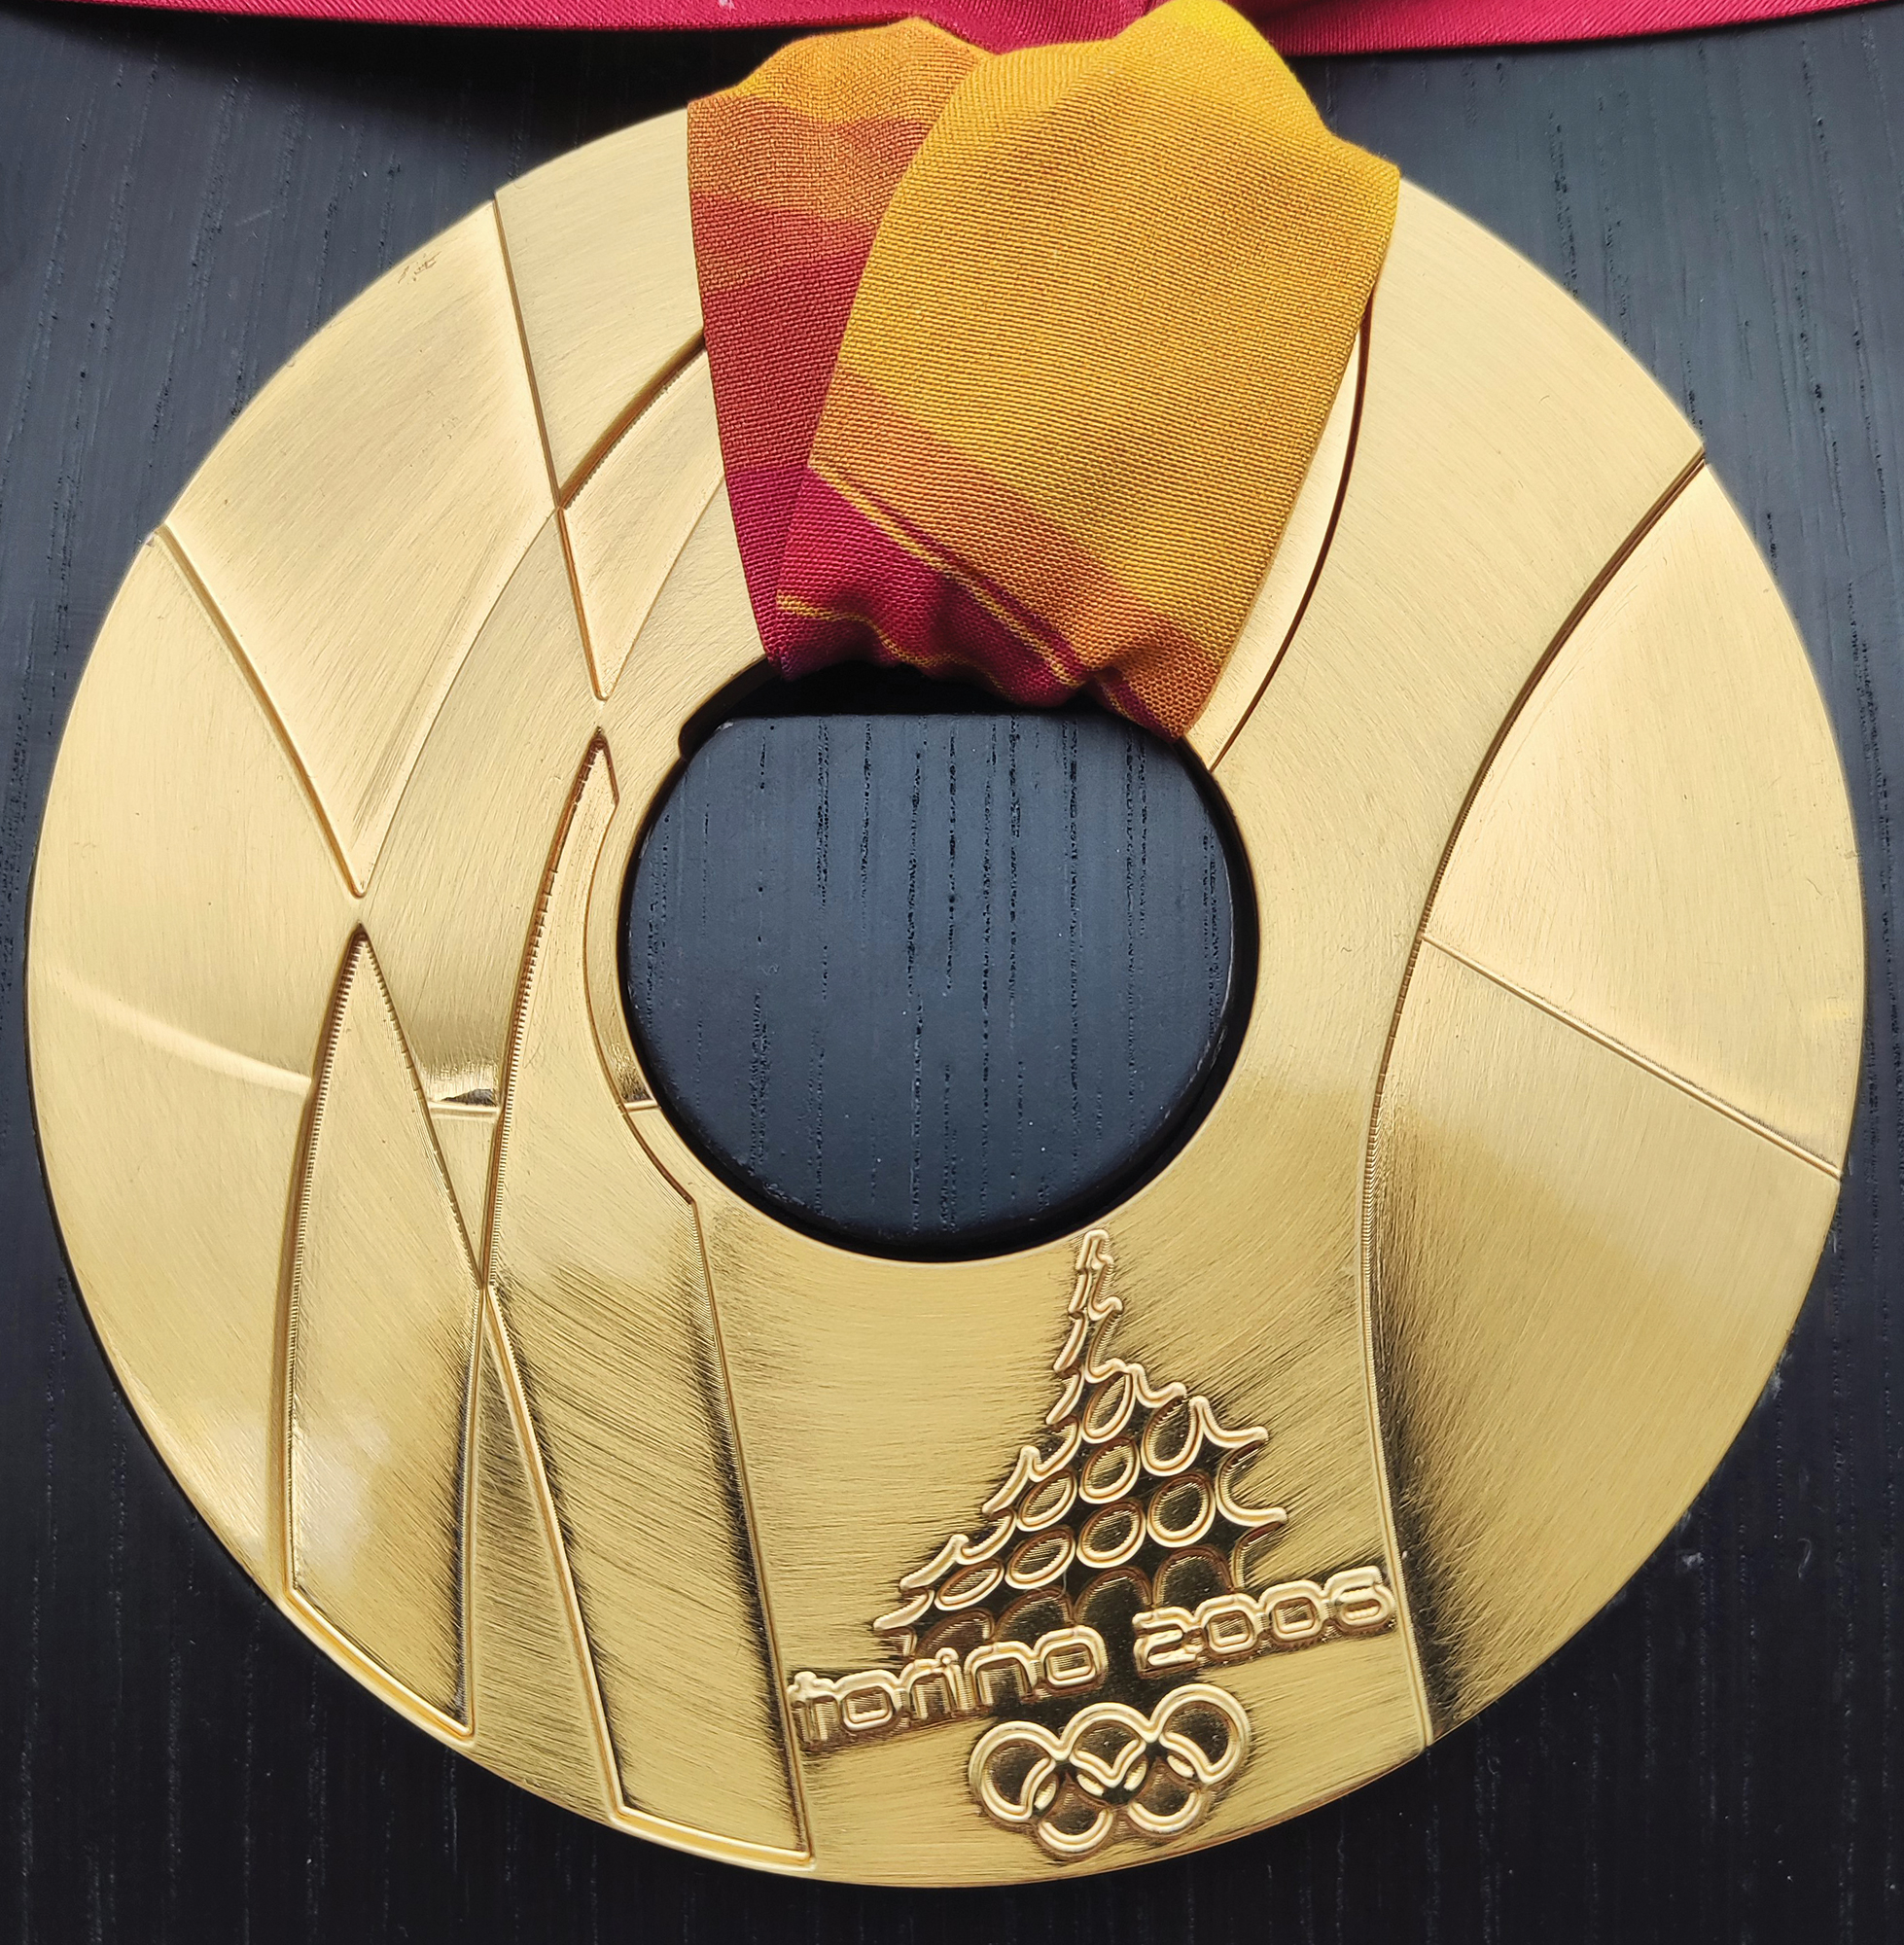 Lot #4072 Torino 2006 Olympics Gold Winner's Medal